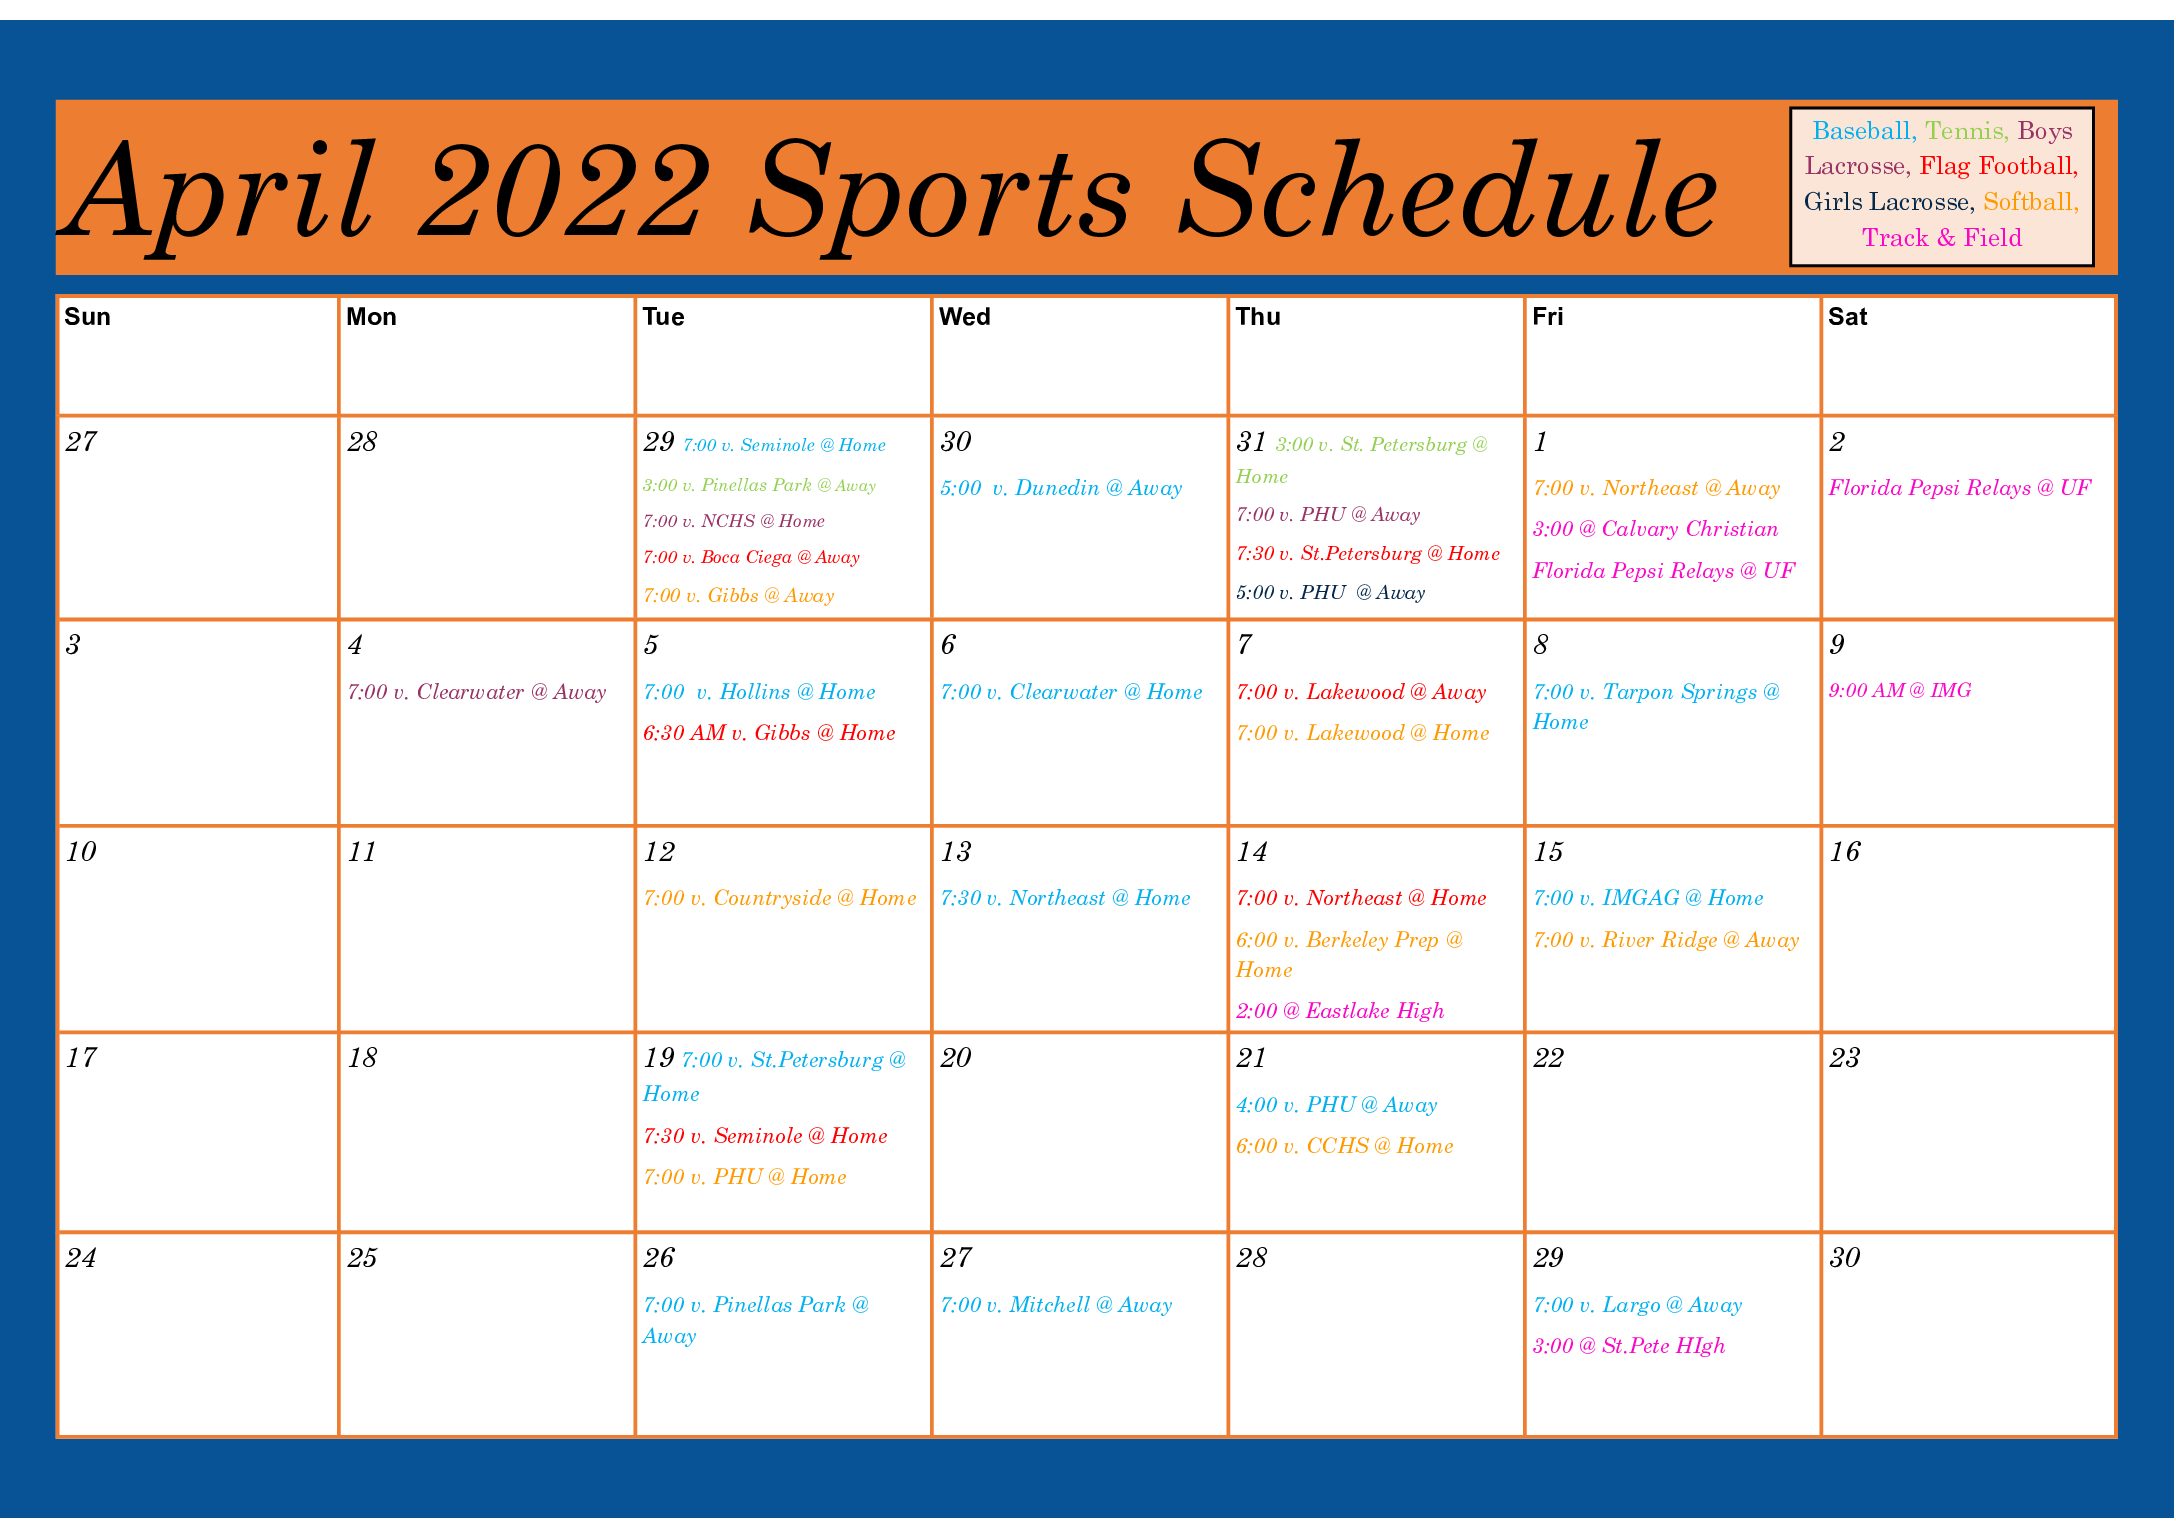 April 2022 Sports Schedule